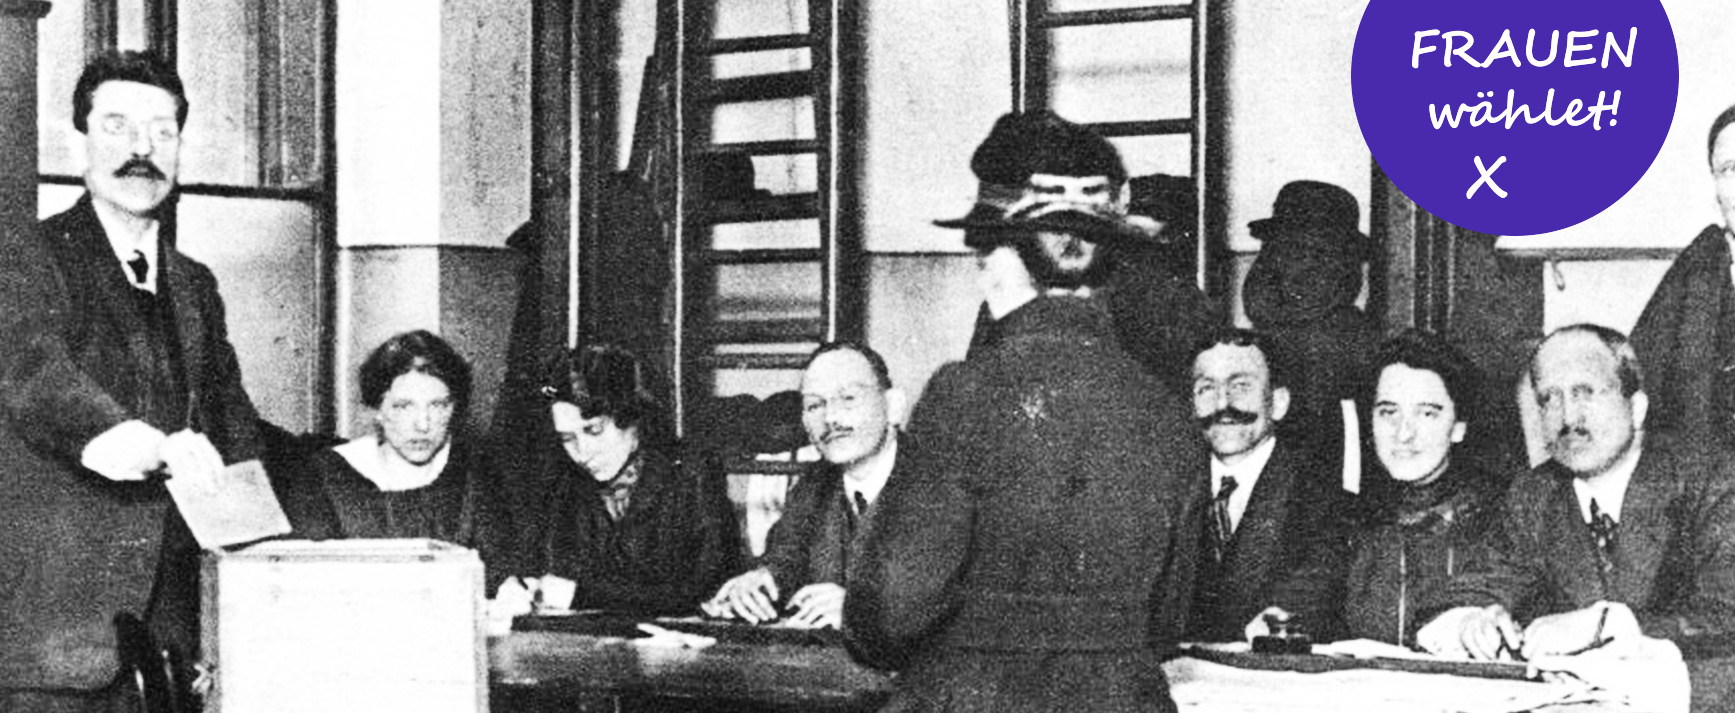 Frauen bei der Wahl zur Konstituierenden Nationalversammlung 1919 (Zeitungsfotografie)